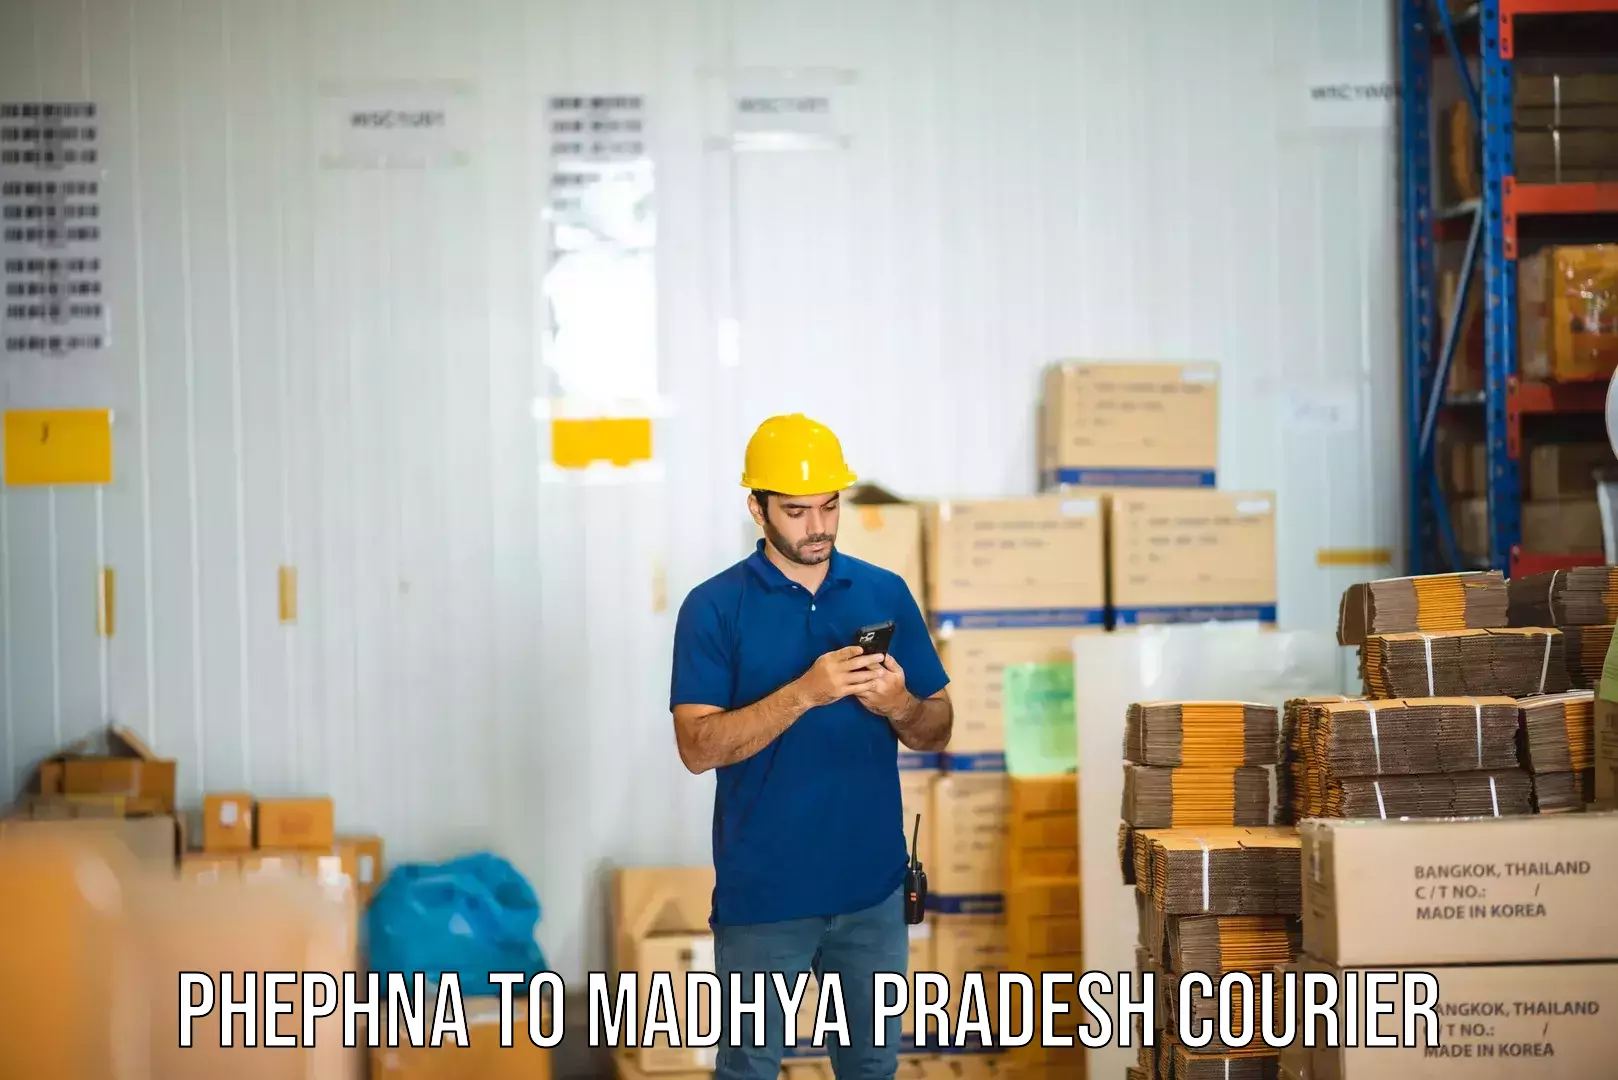 Online courier booking Phephna to Jaora